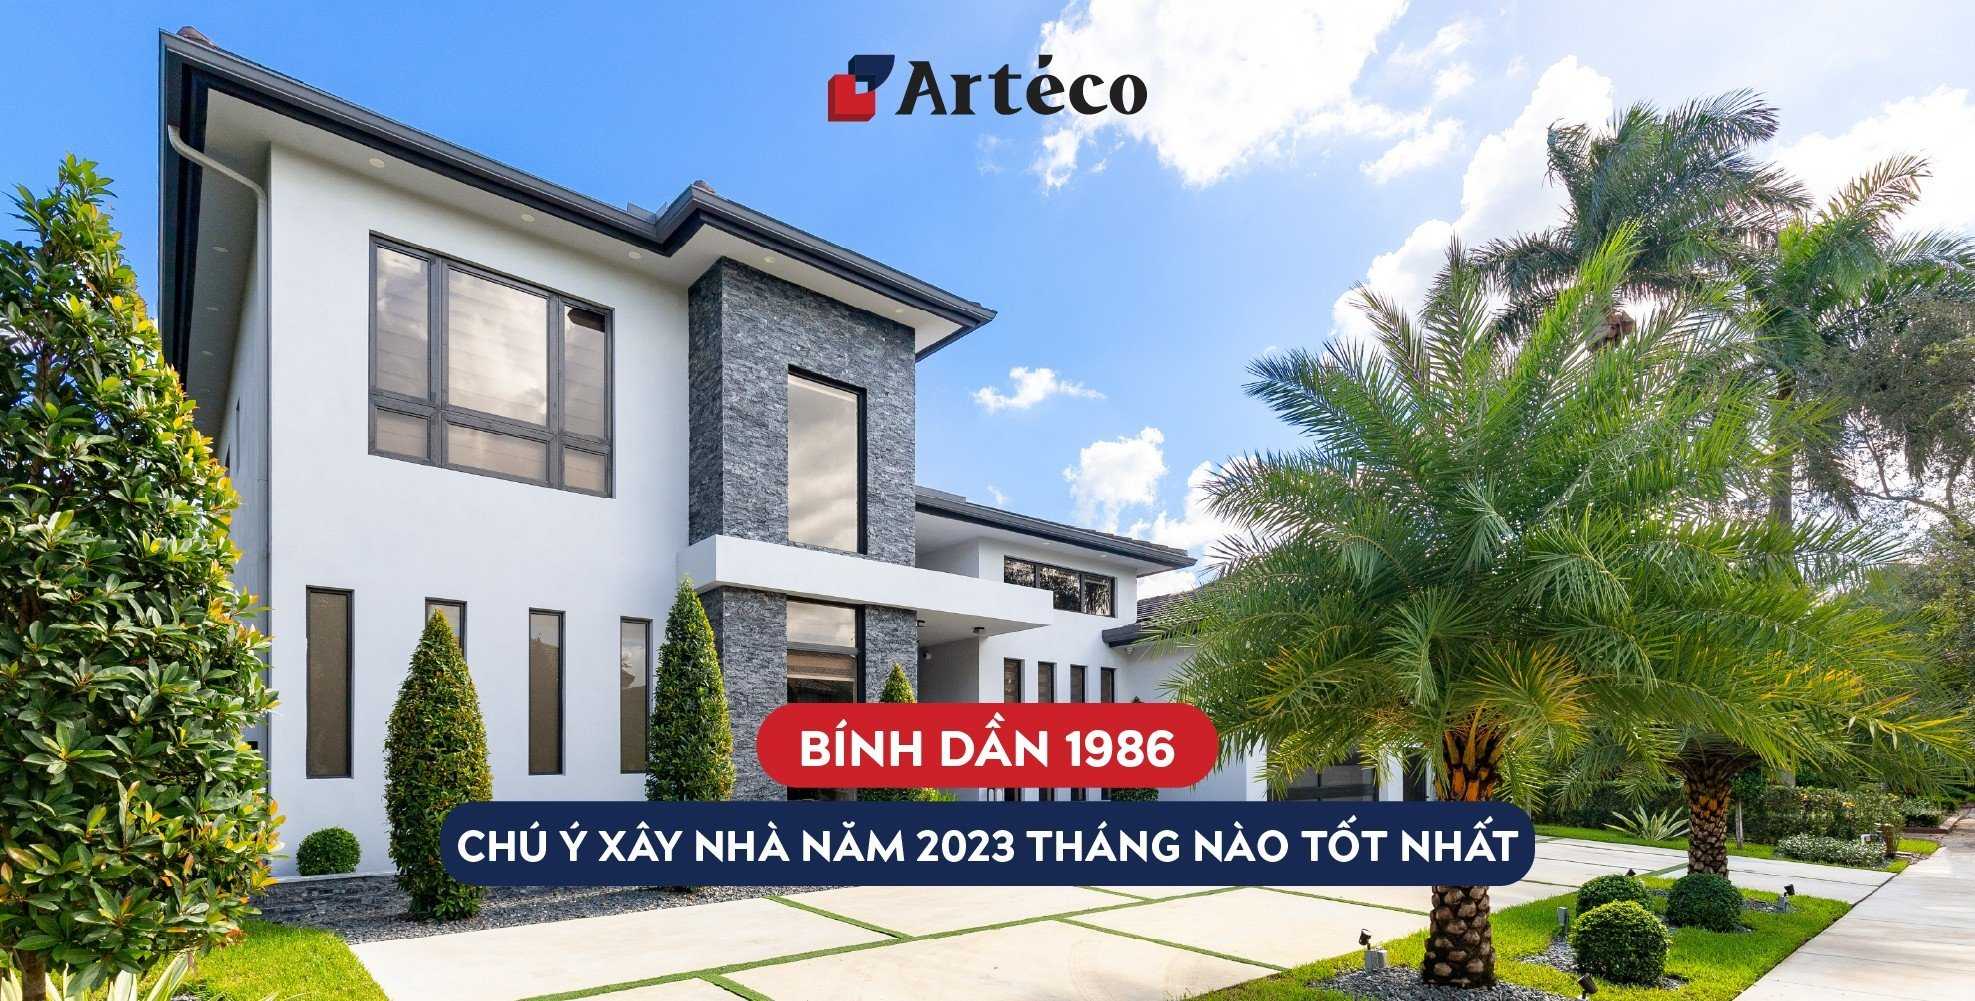 Arteco - 1986 xây nhà năm 2023 tháng nào tốt